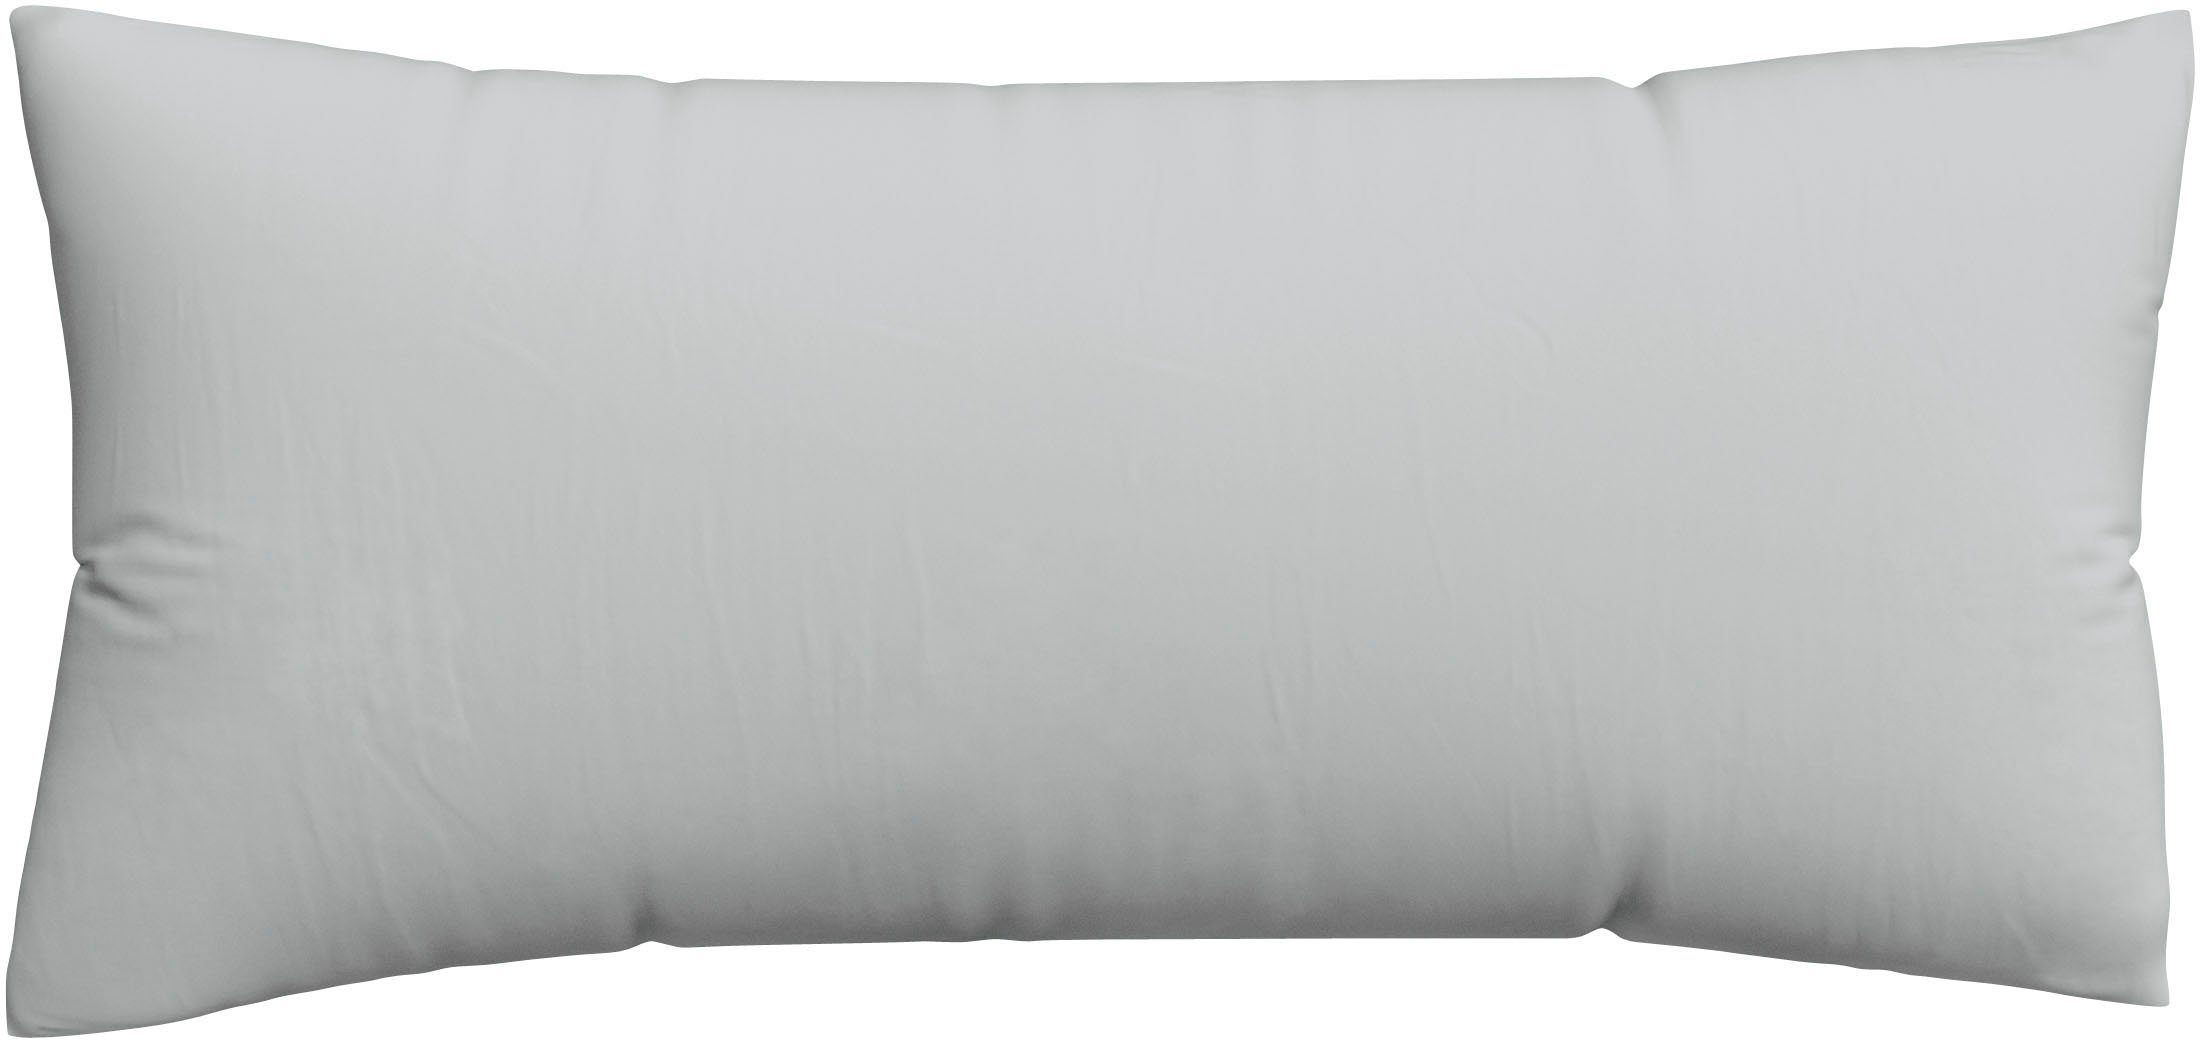 Kissenbezug Woven Satin aus Mako-Baumwolle, langlebig, pflegeleicht, dicht gewebt, Schlafgut (1 Stück), Kissenhülle mit Reißverschluss, passender Bettbezug erhältlich